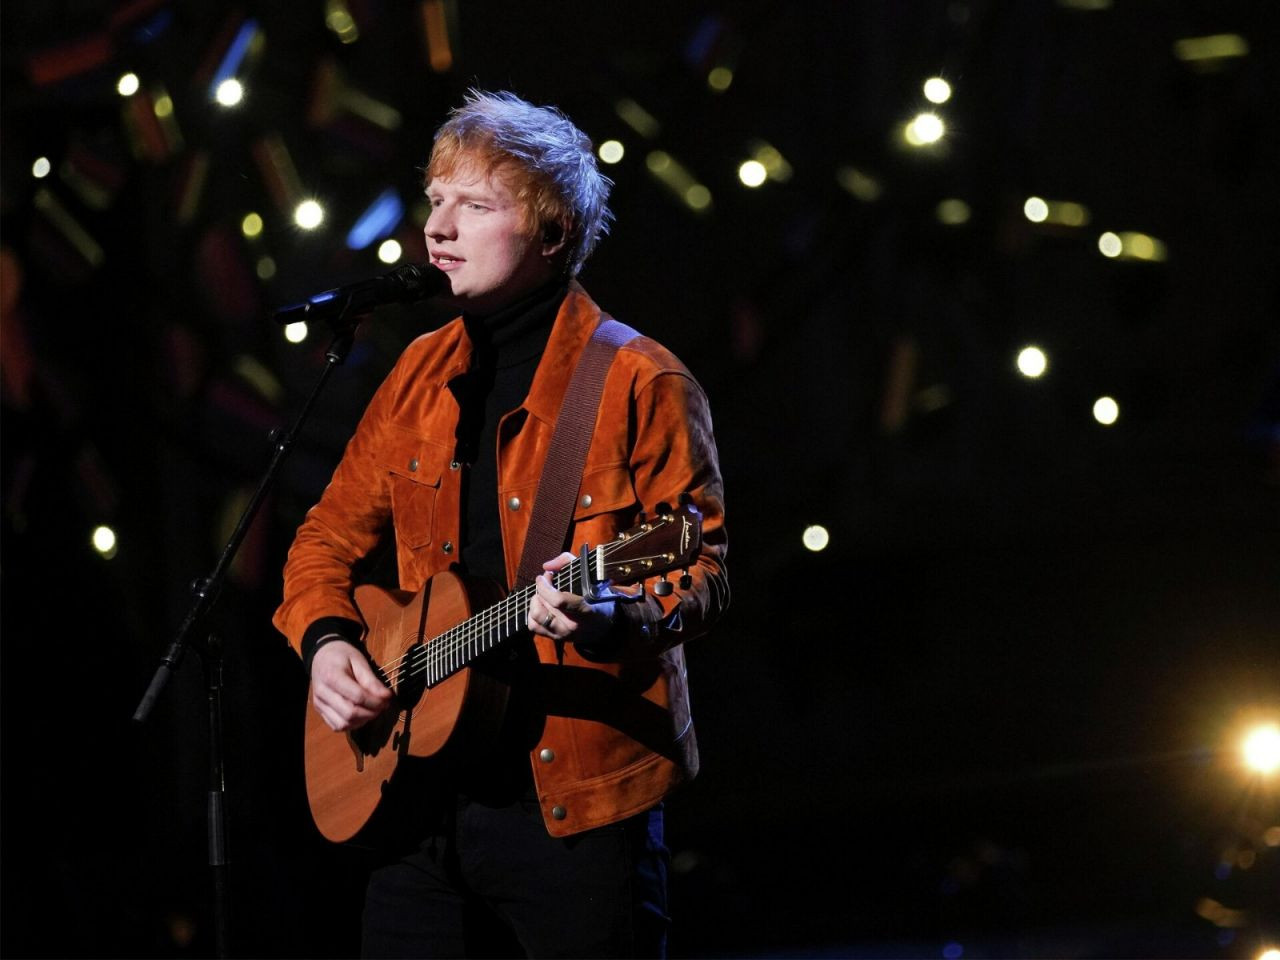 Şarkı çalmakla suçlanan Ed Sheeran ifade verdi - Sayfa 3